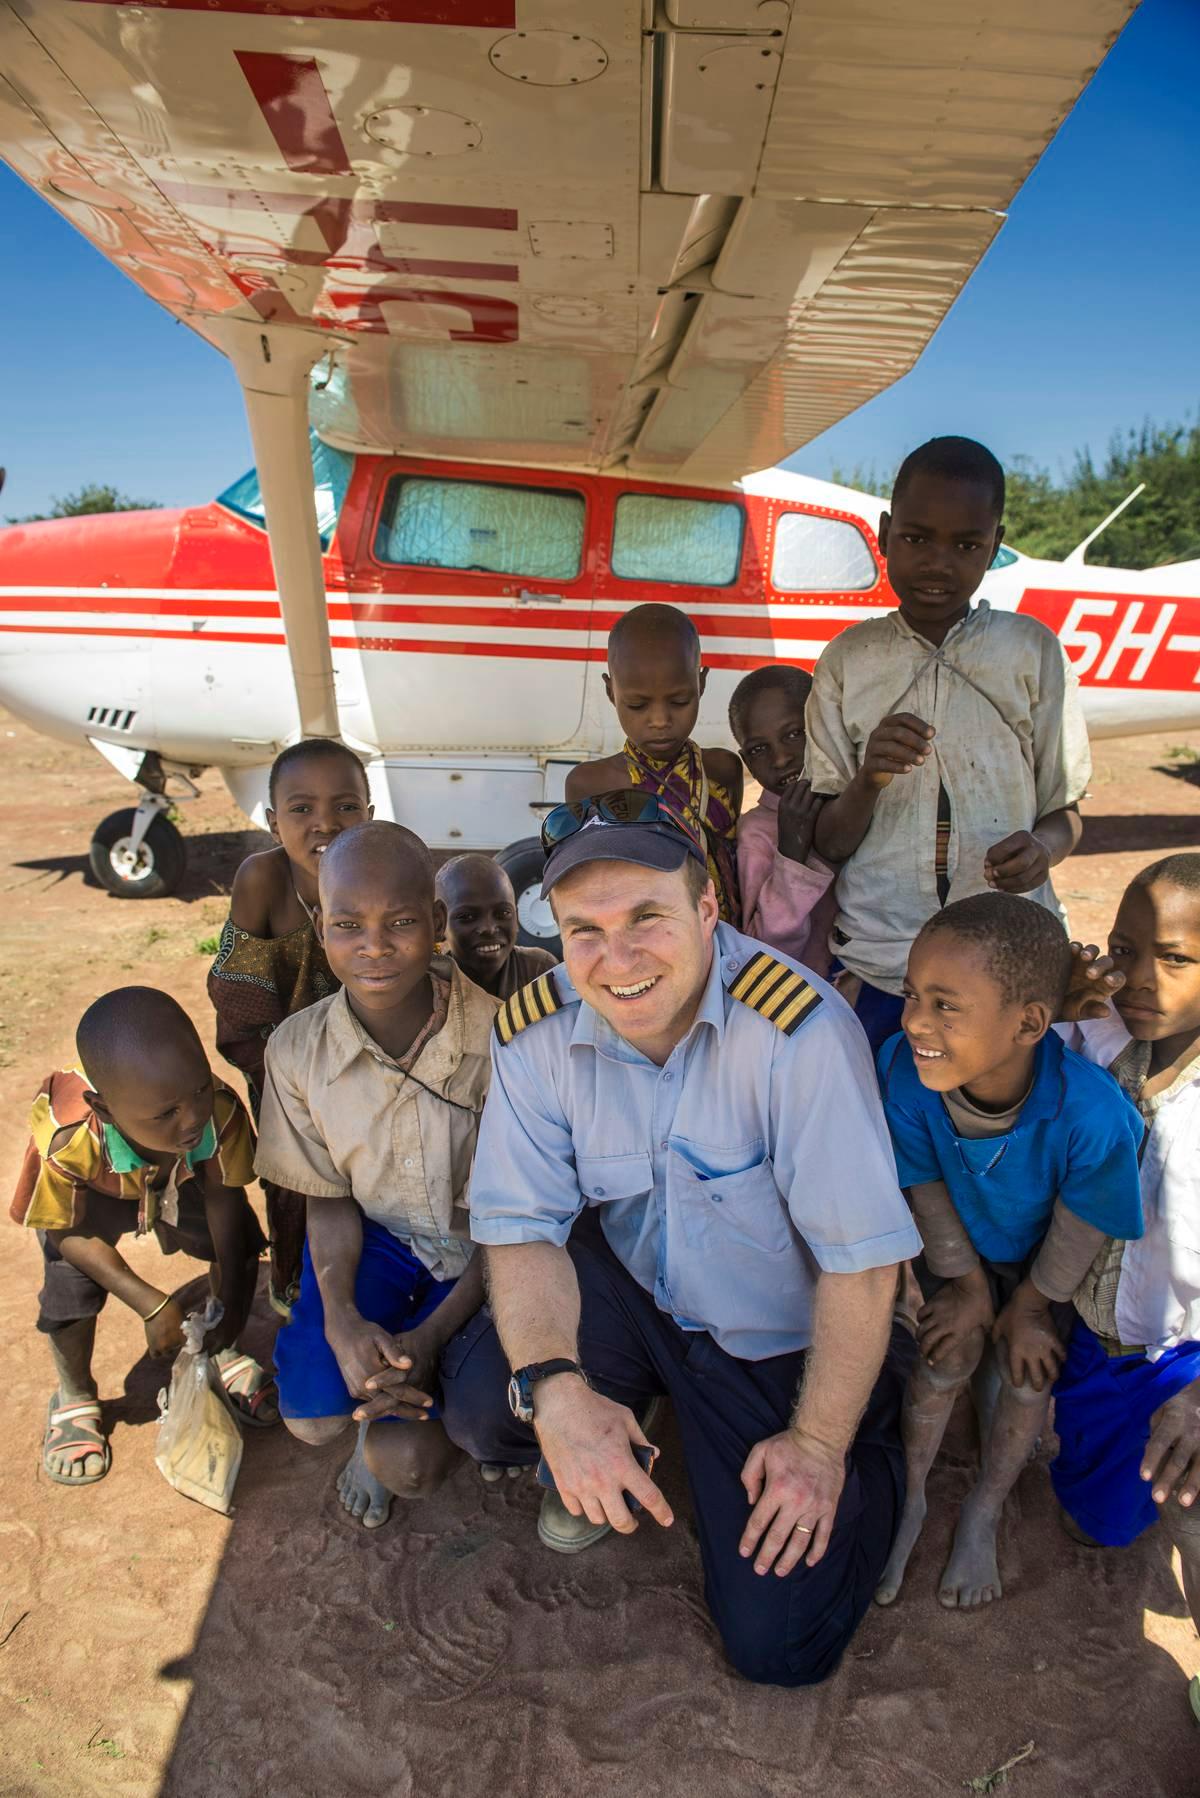 Lähetyslentäjä Jarkko Korhonen Dabian kiitoradalla tansanialaislasten kanssa. Kuva on MAF Tansanian terveydenhuoltoon keskittyvältä Kilimatiden lento-safarilta.